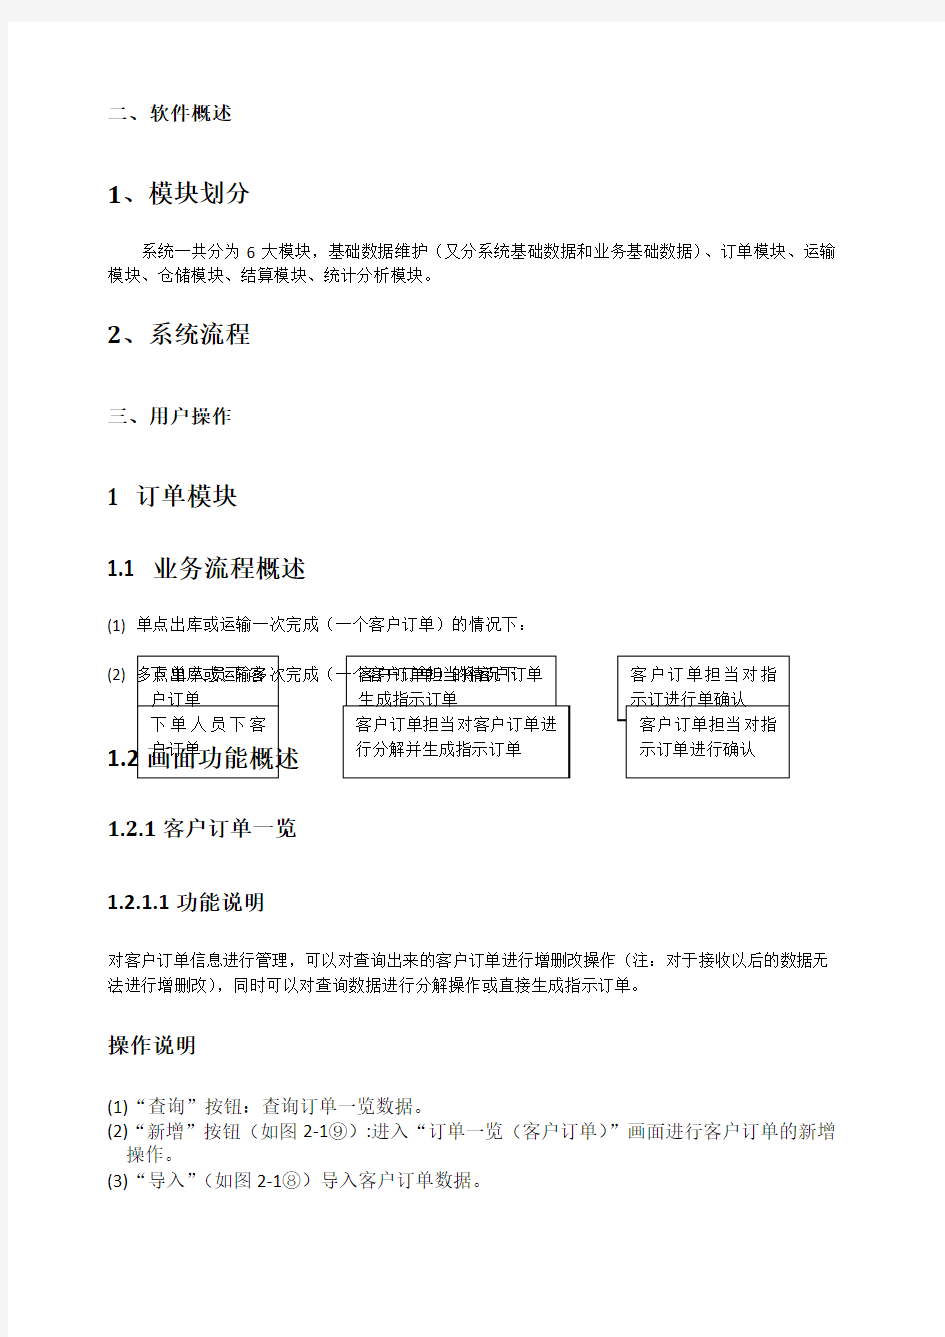 中国物流物流信息管理系统用户手册